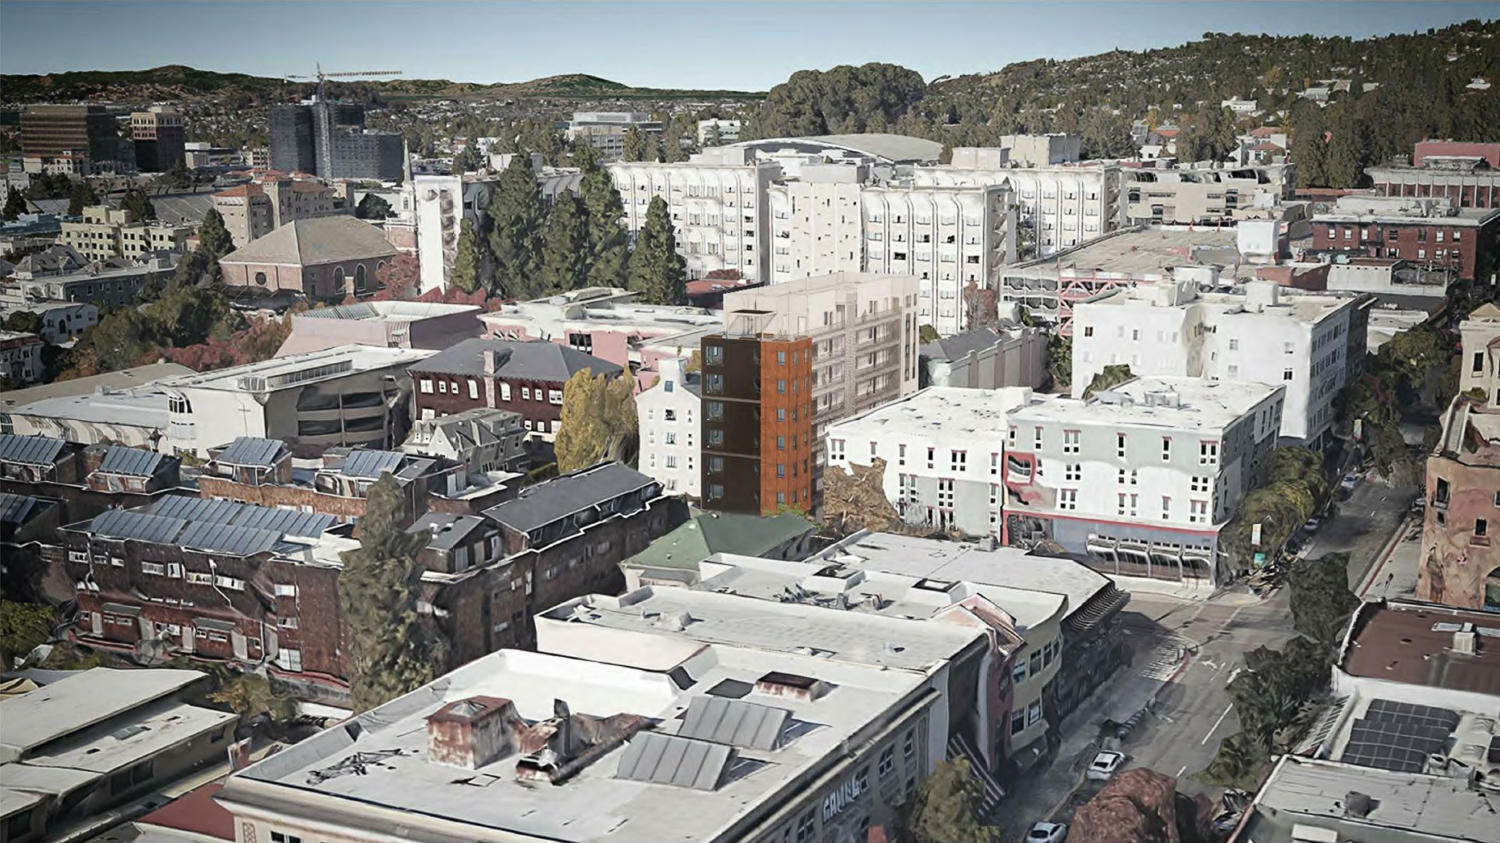 2435 Haste Street aerial view, rendering by Studio KDA